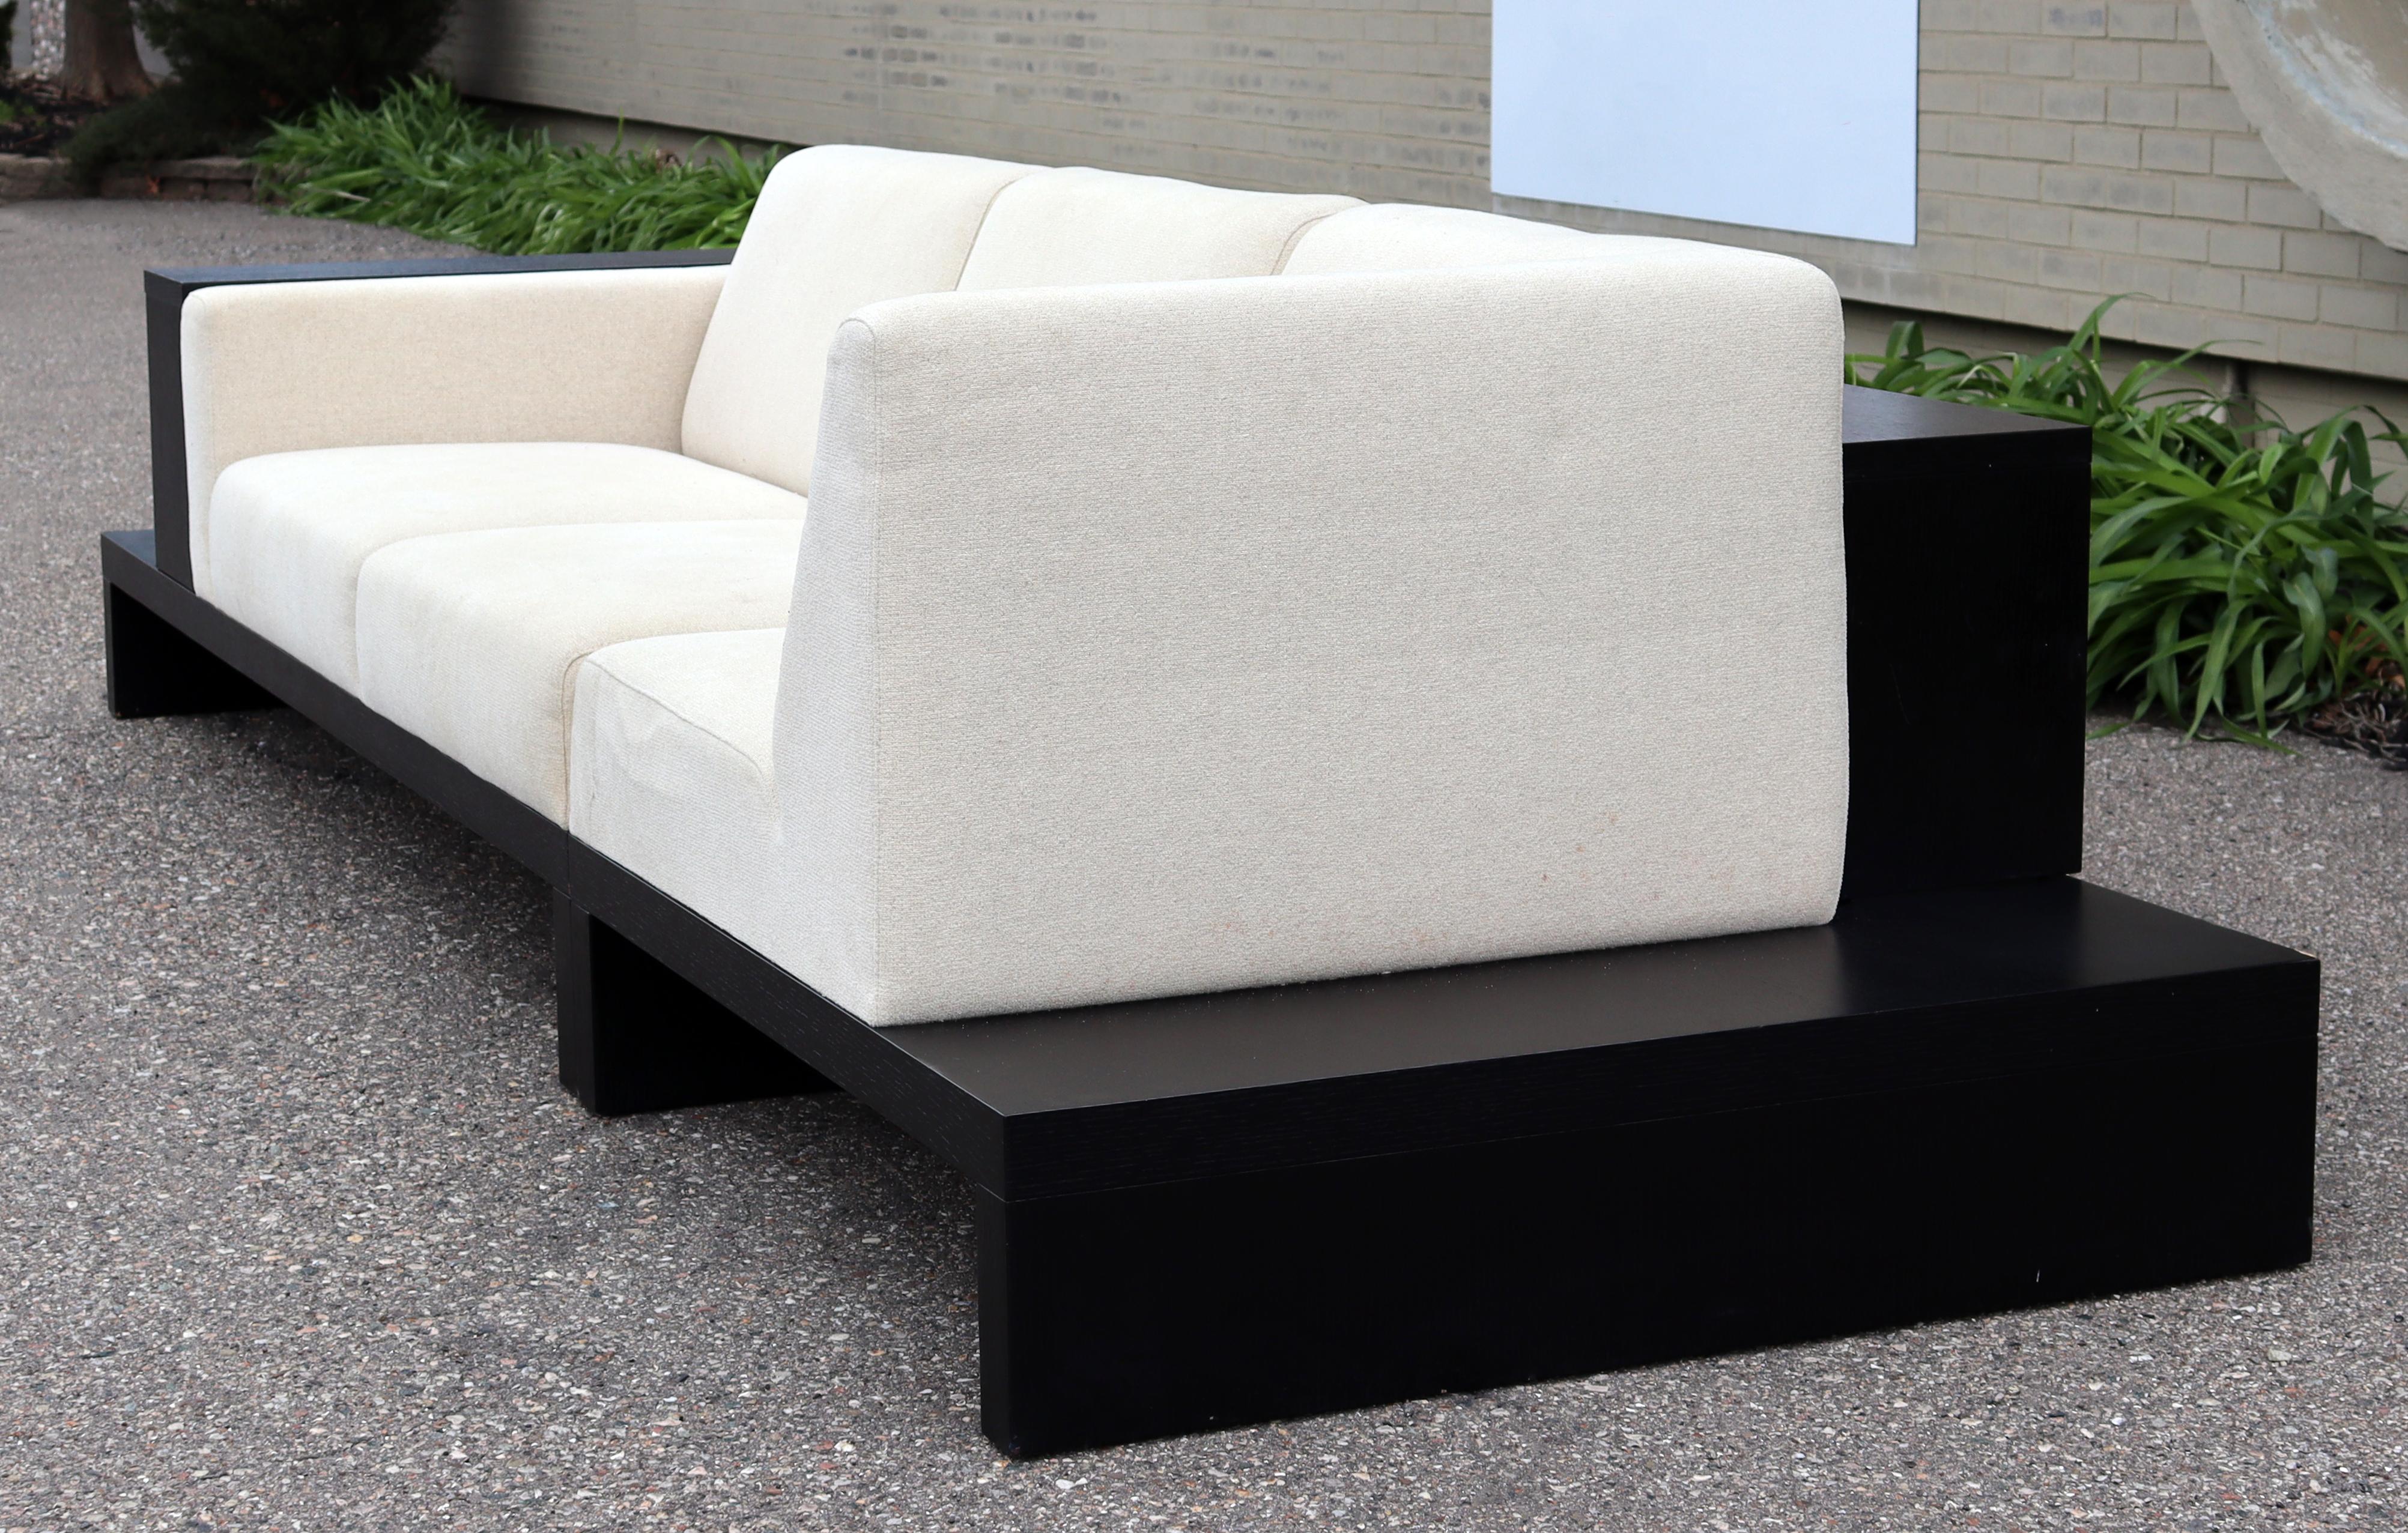 Contemporary Modernist Cream Sofa on Platform with Shelving 7